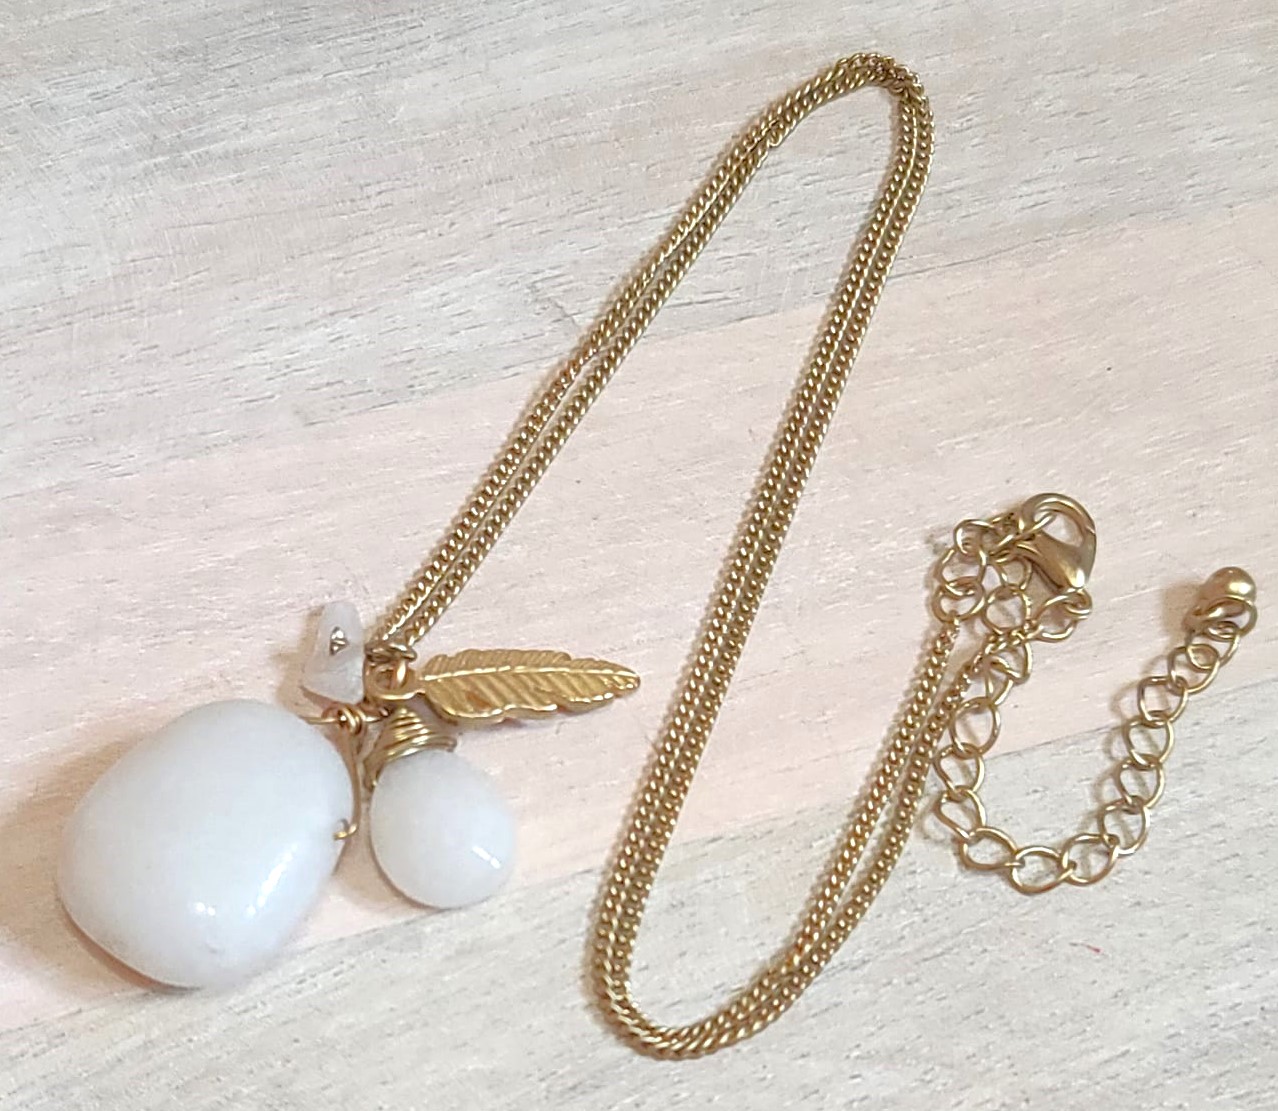 Gemstone pendant necklace, white quartz gemstone pendant, with feather charm, necklace